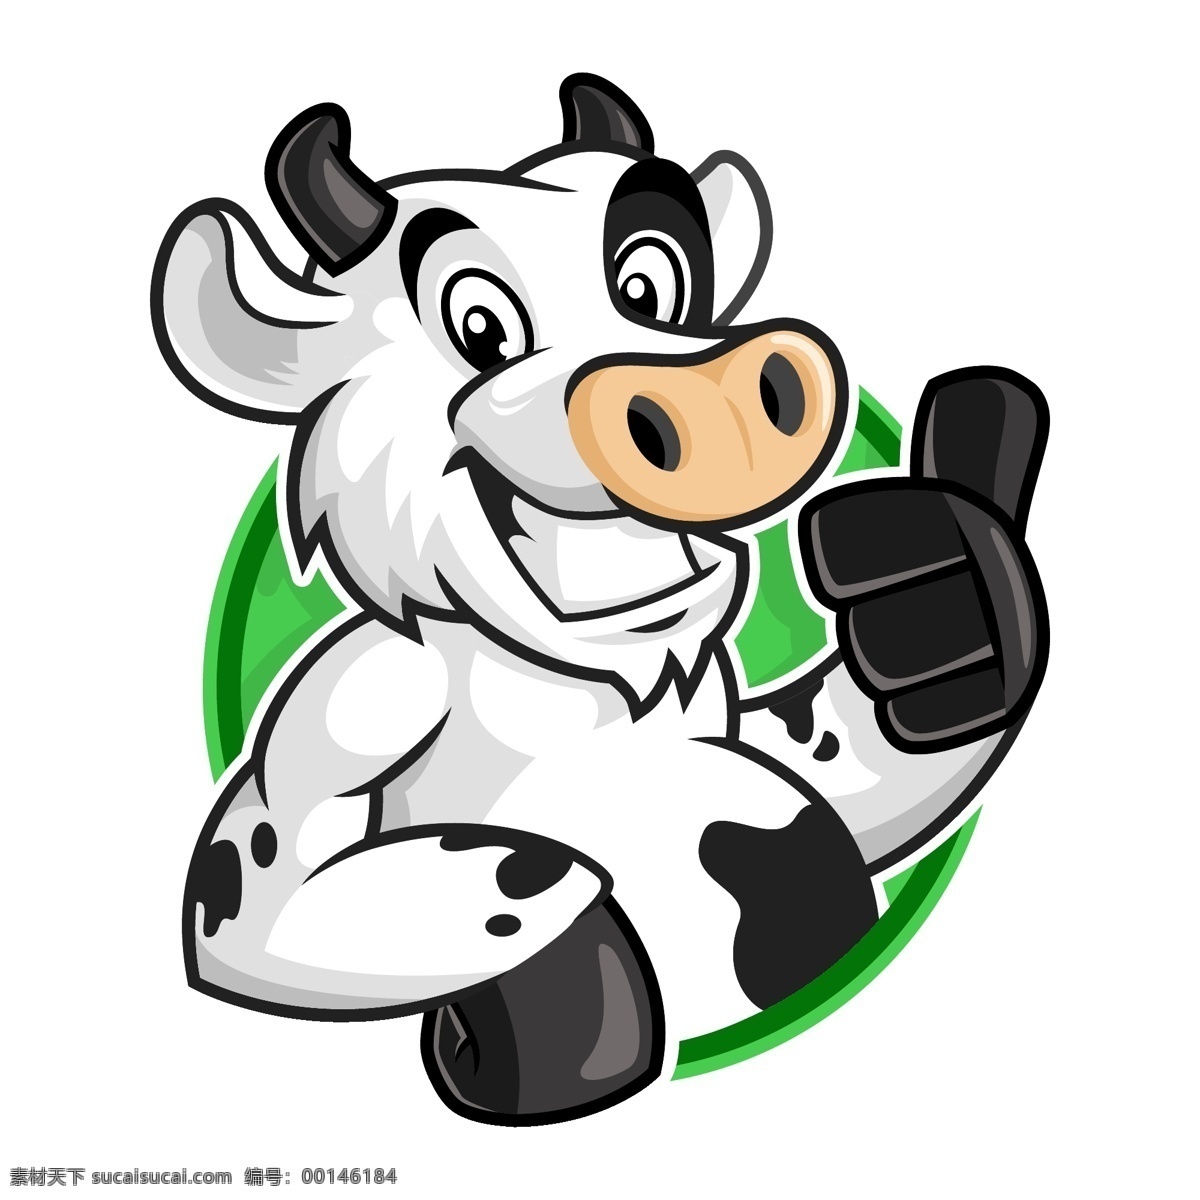 牛头标志 牛头 牛头logo 牛头标记 公牛logo 公牛标志 公牛标记 简约牛头 牛标记 牛logo 牛标志 蒙牛标志 猛牛标志 猛牛标记 猛牛logo logo设计